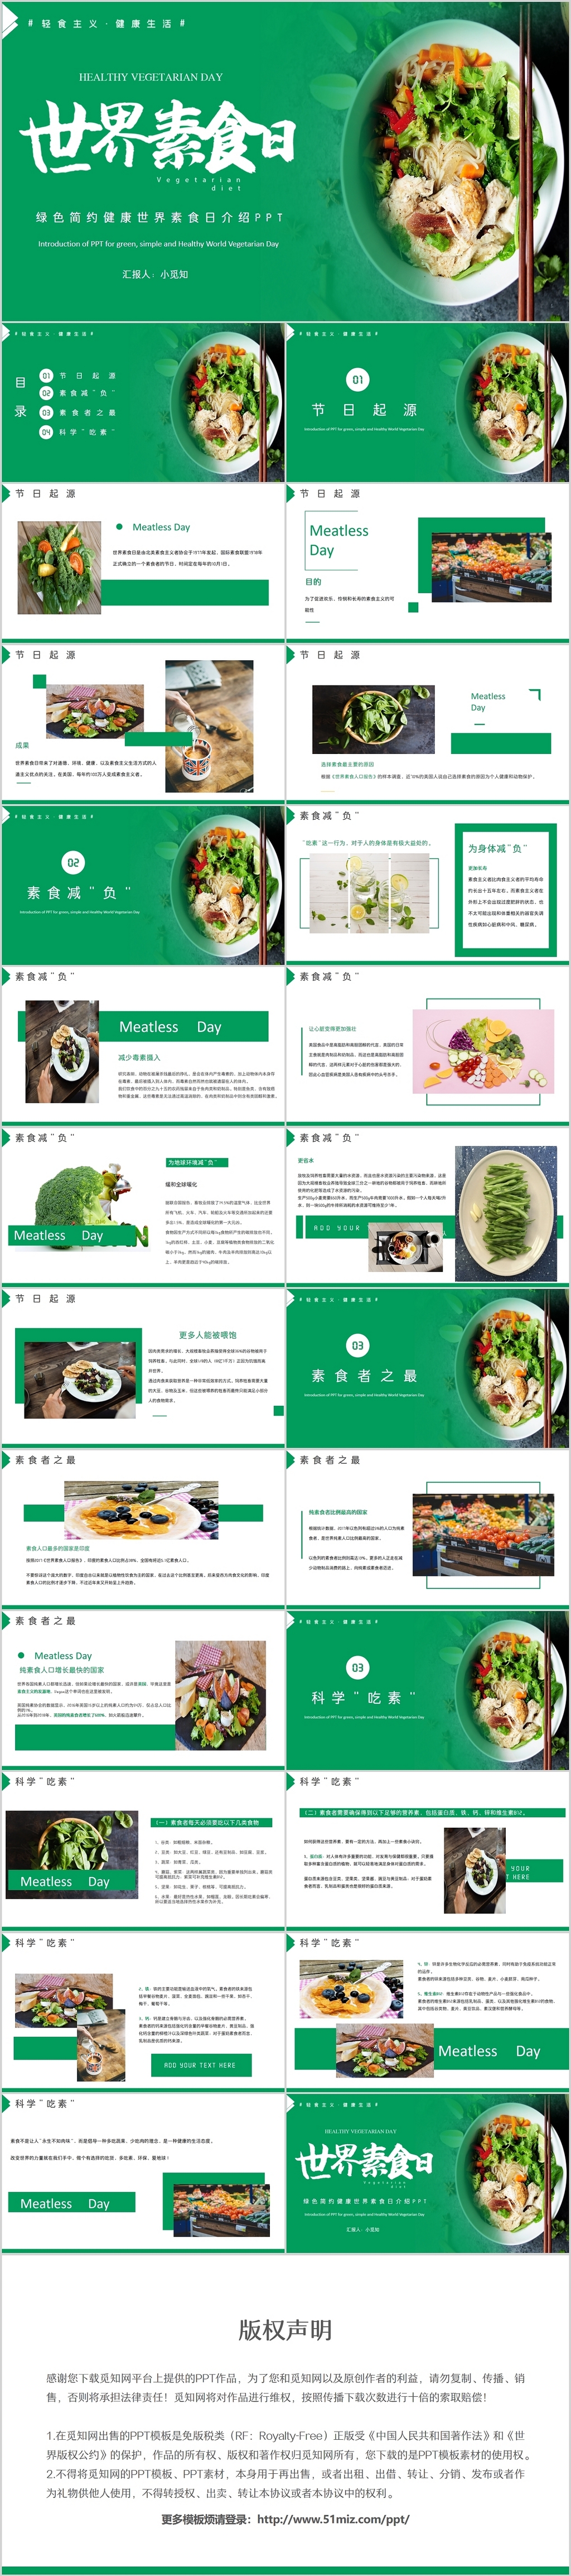 绿色简约健康世界素食日介绍PPT模板